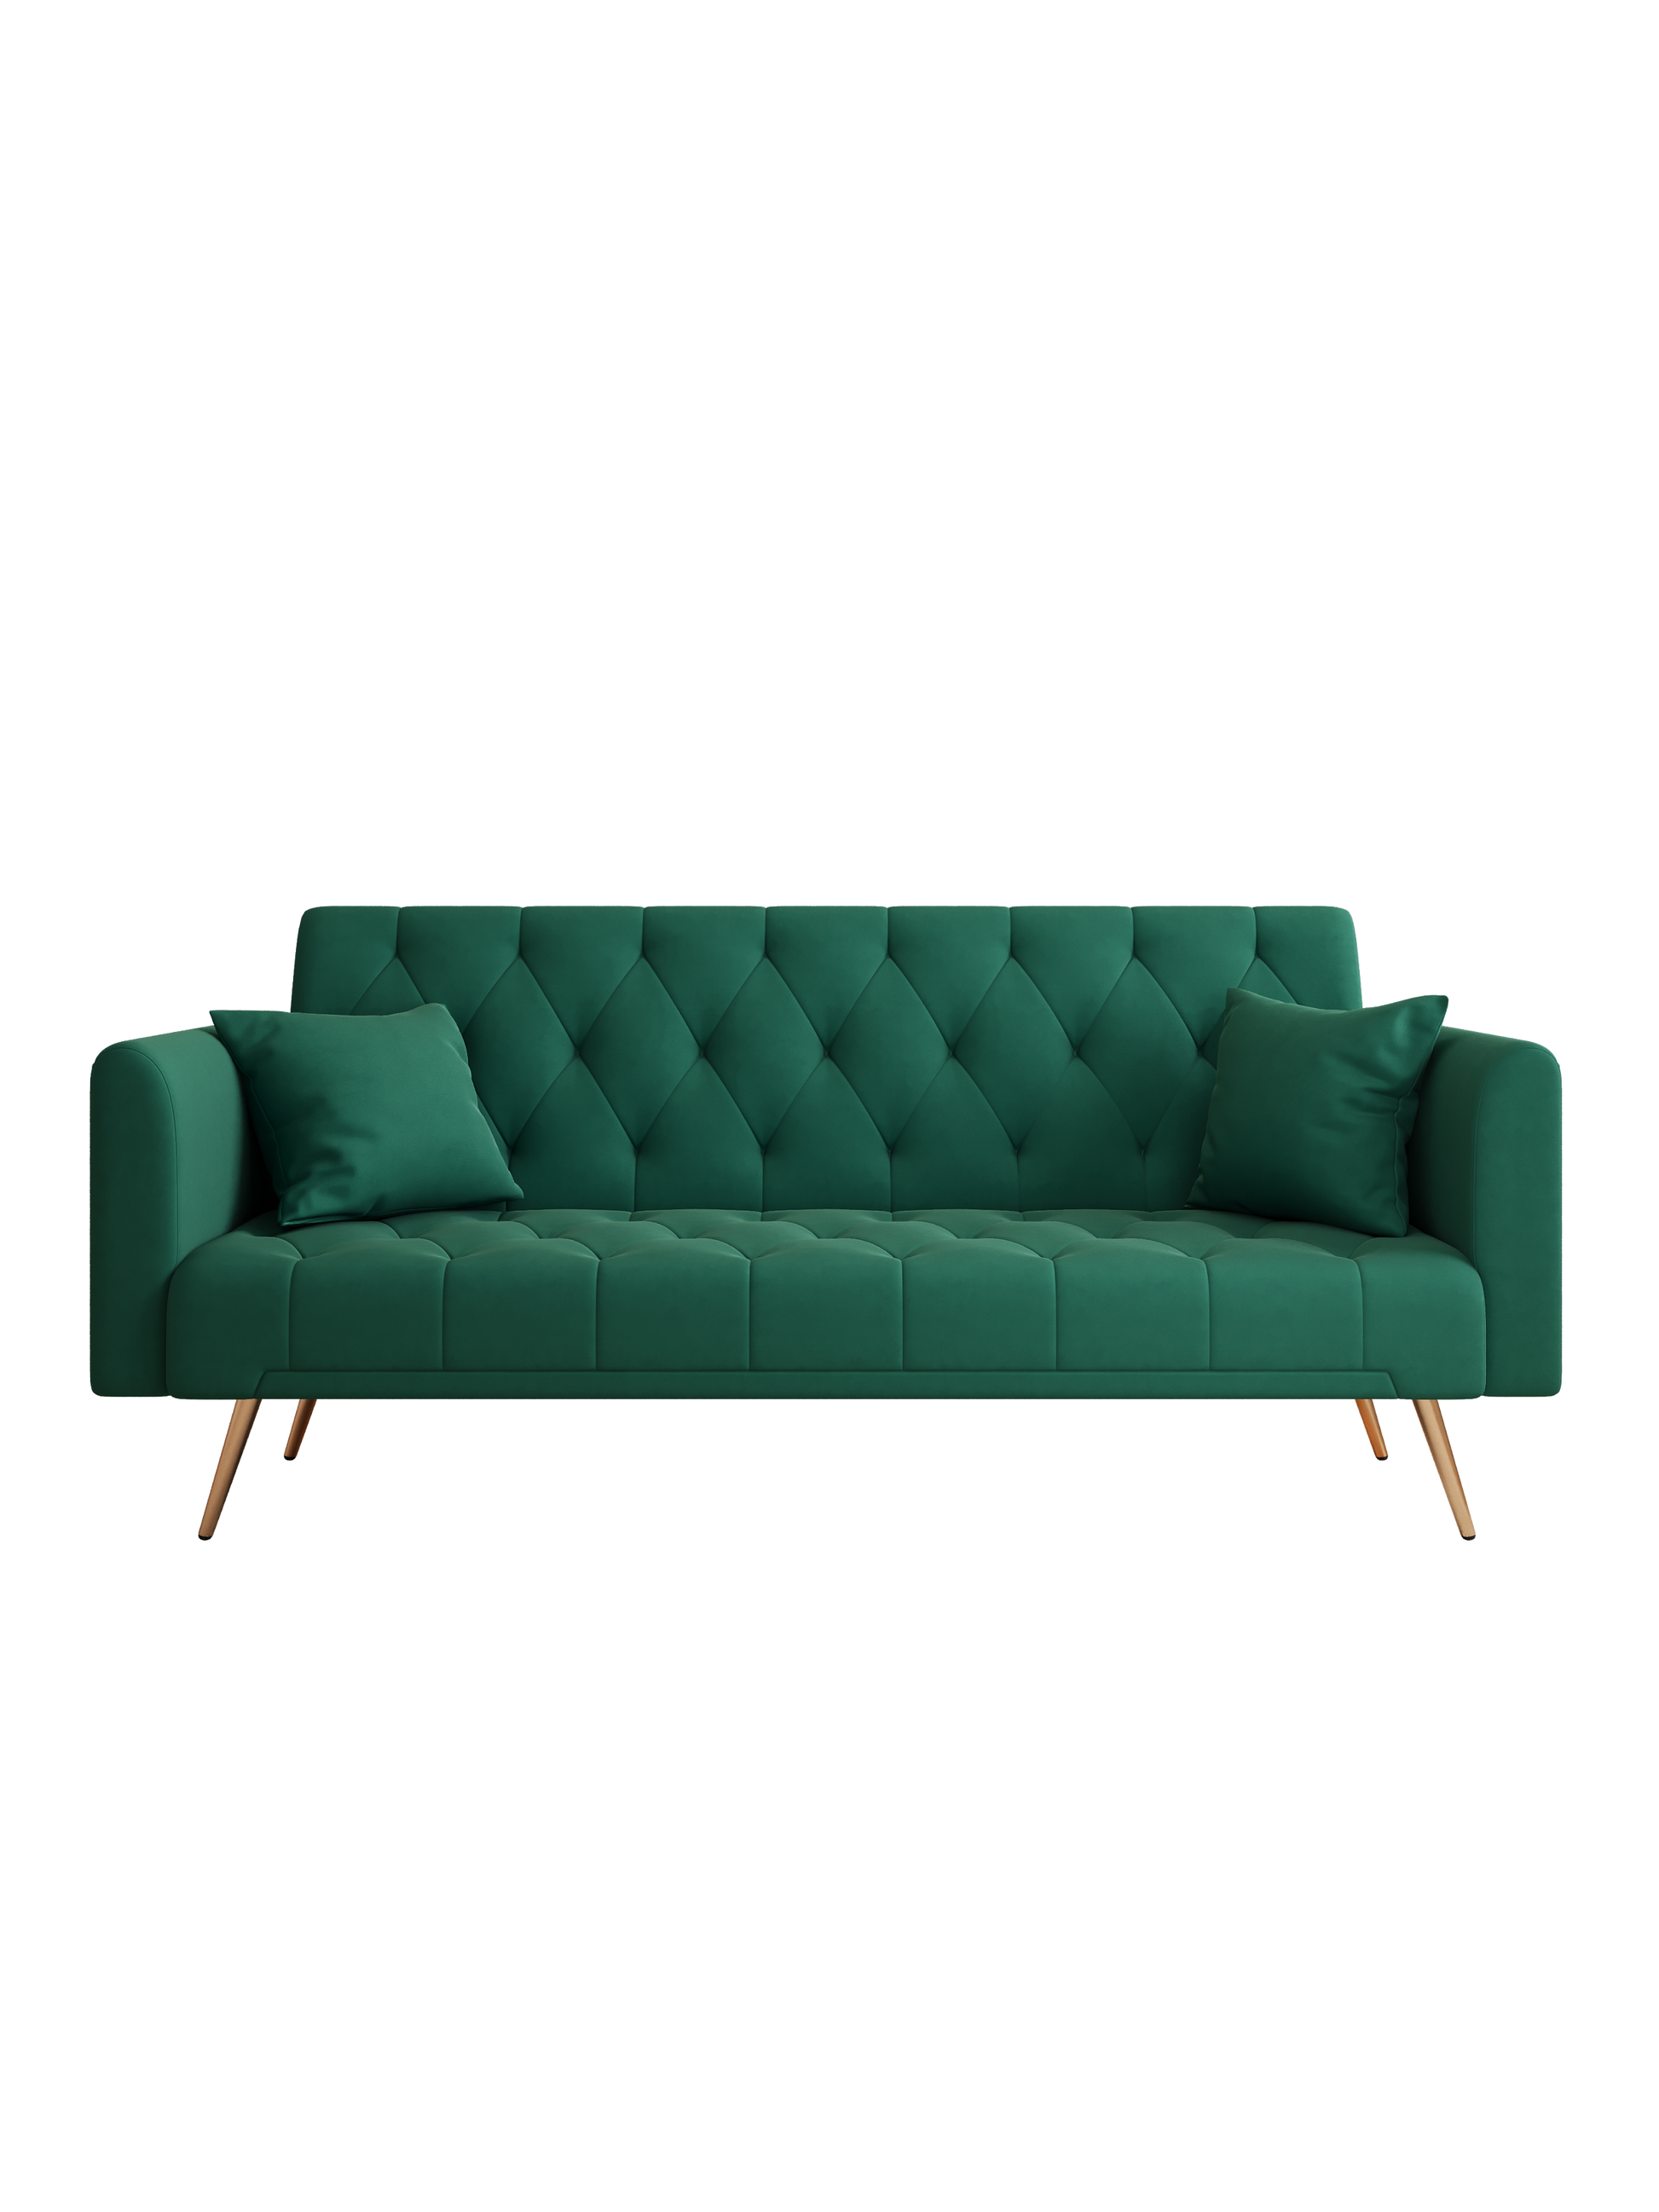 71" Convertible Double Folding Living Room Sofa Bed green-velvet